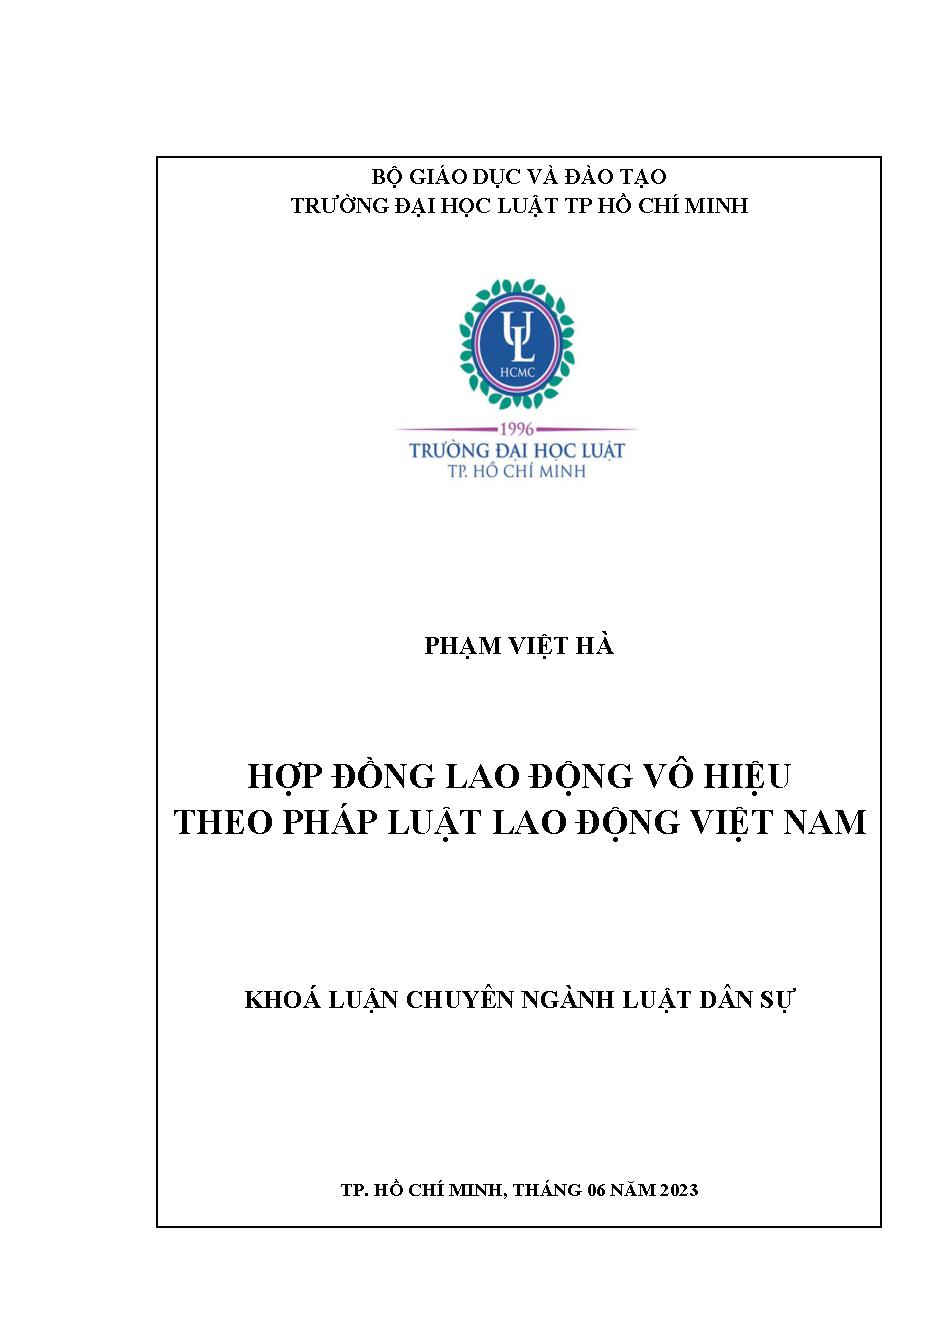 Hợp đồng lao động vô hiệu theo pháp luật Lao động Việt Nam